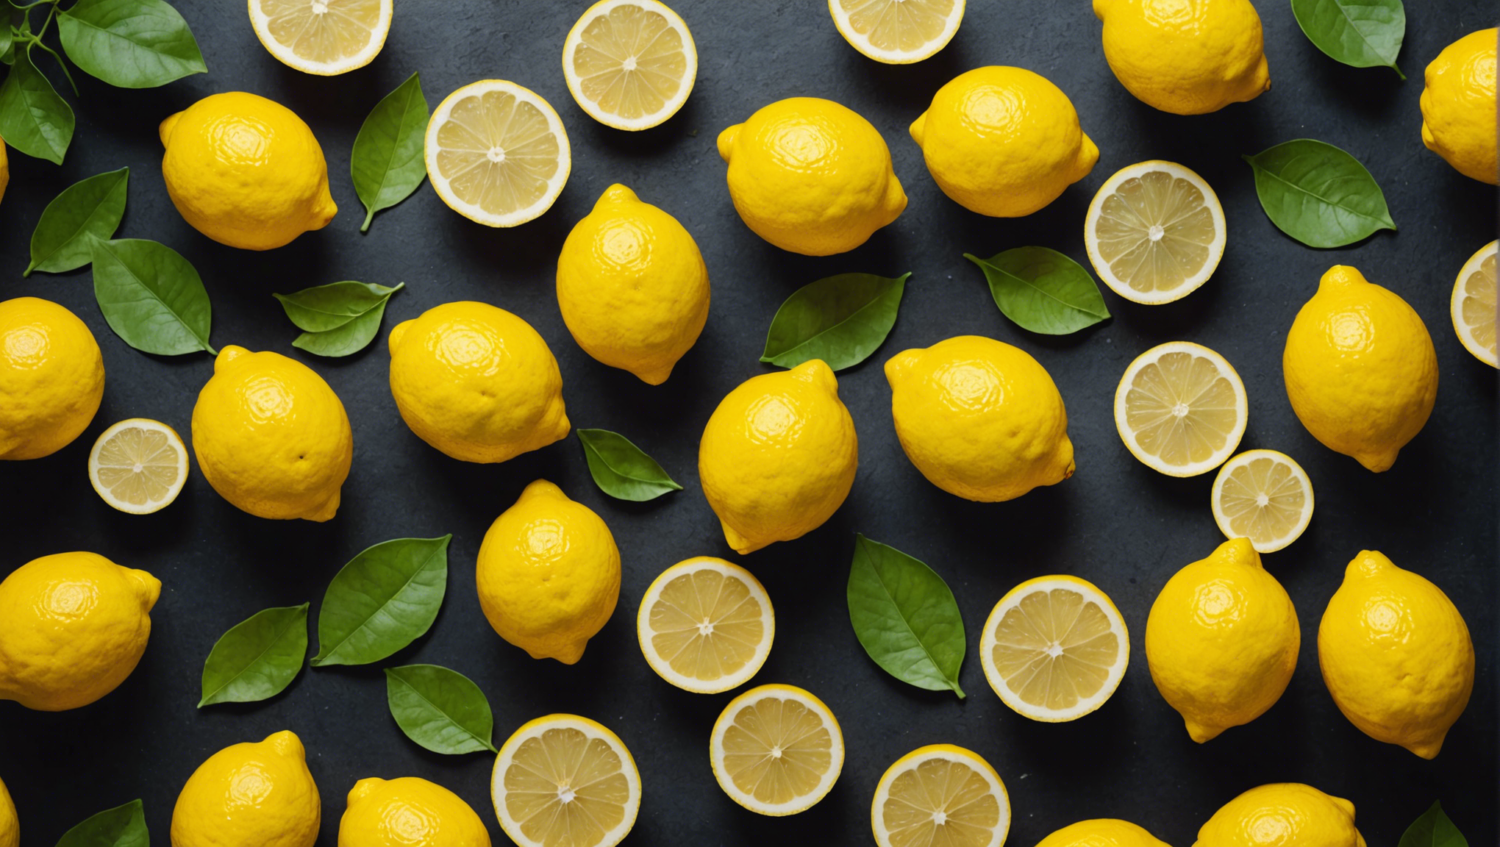 découvrez des astuces pour exploiter pleinement vos citrons et cessez de gaspiller ces précieux agrumes.